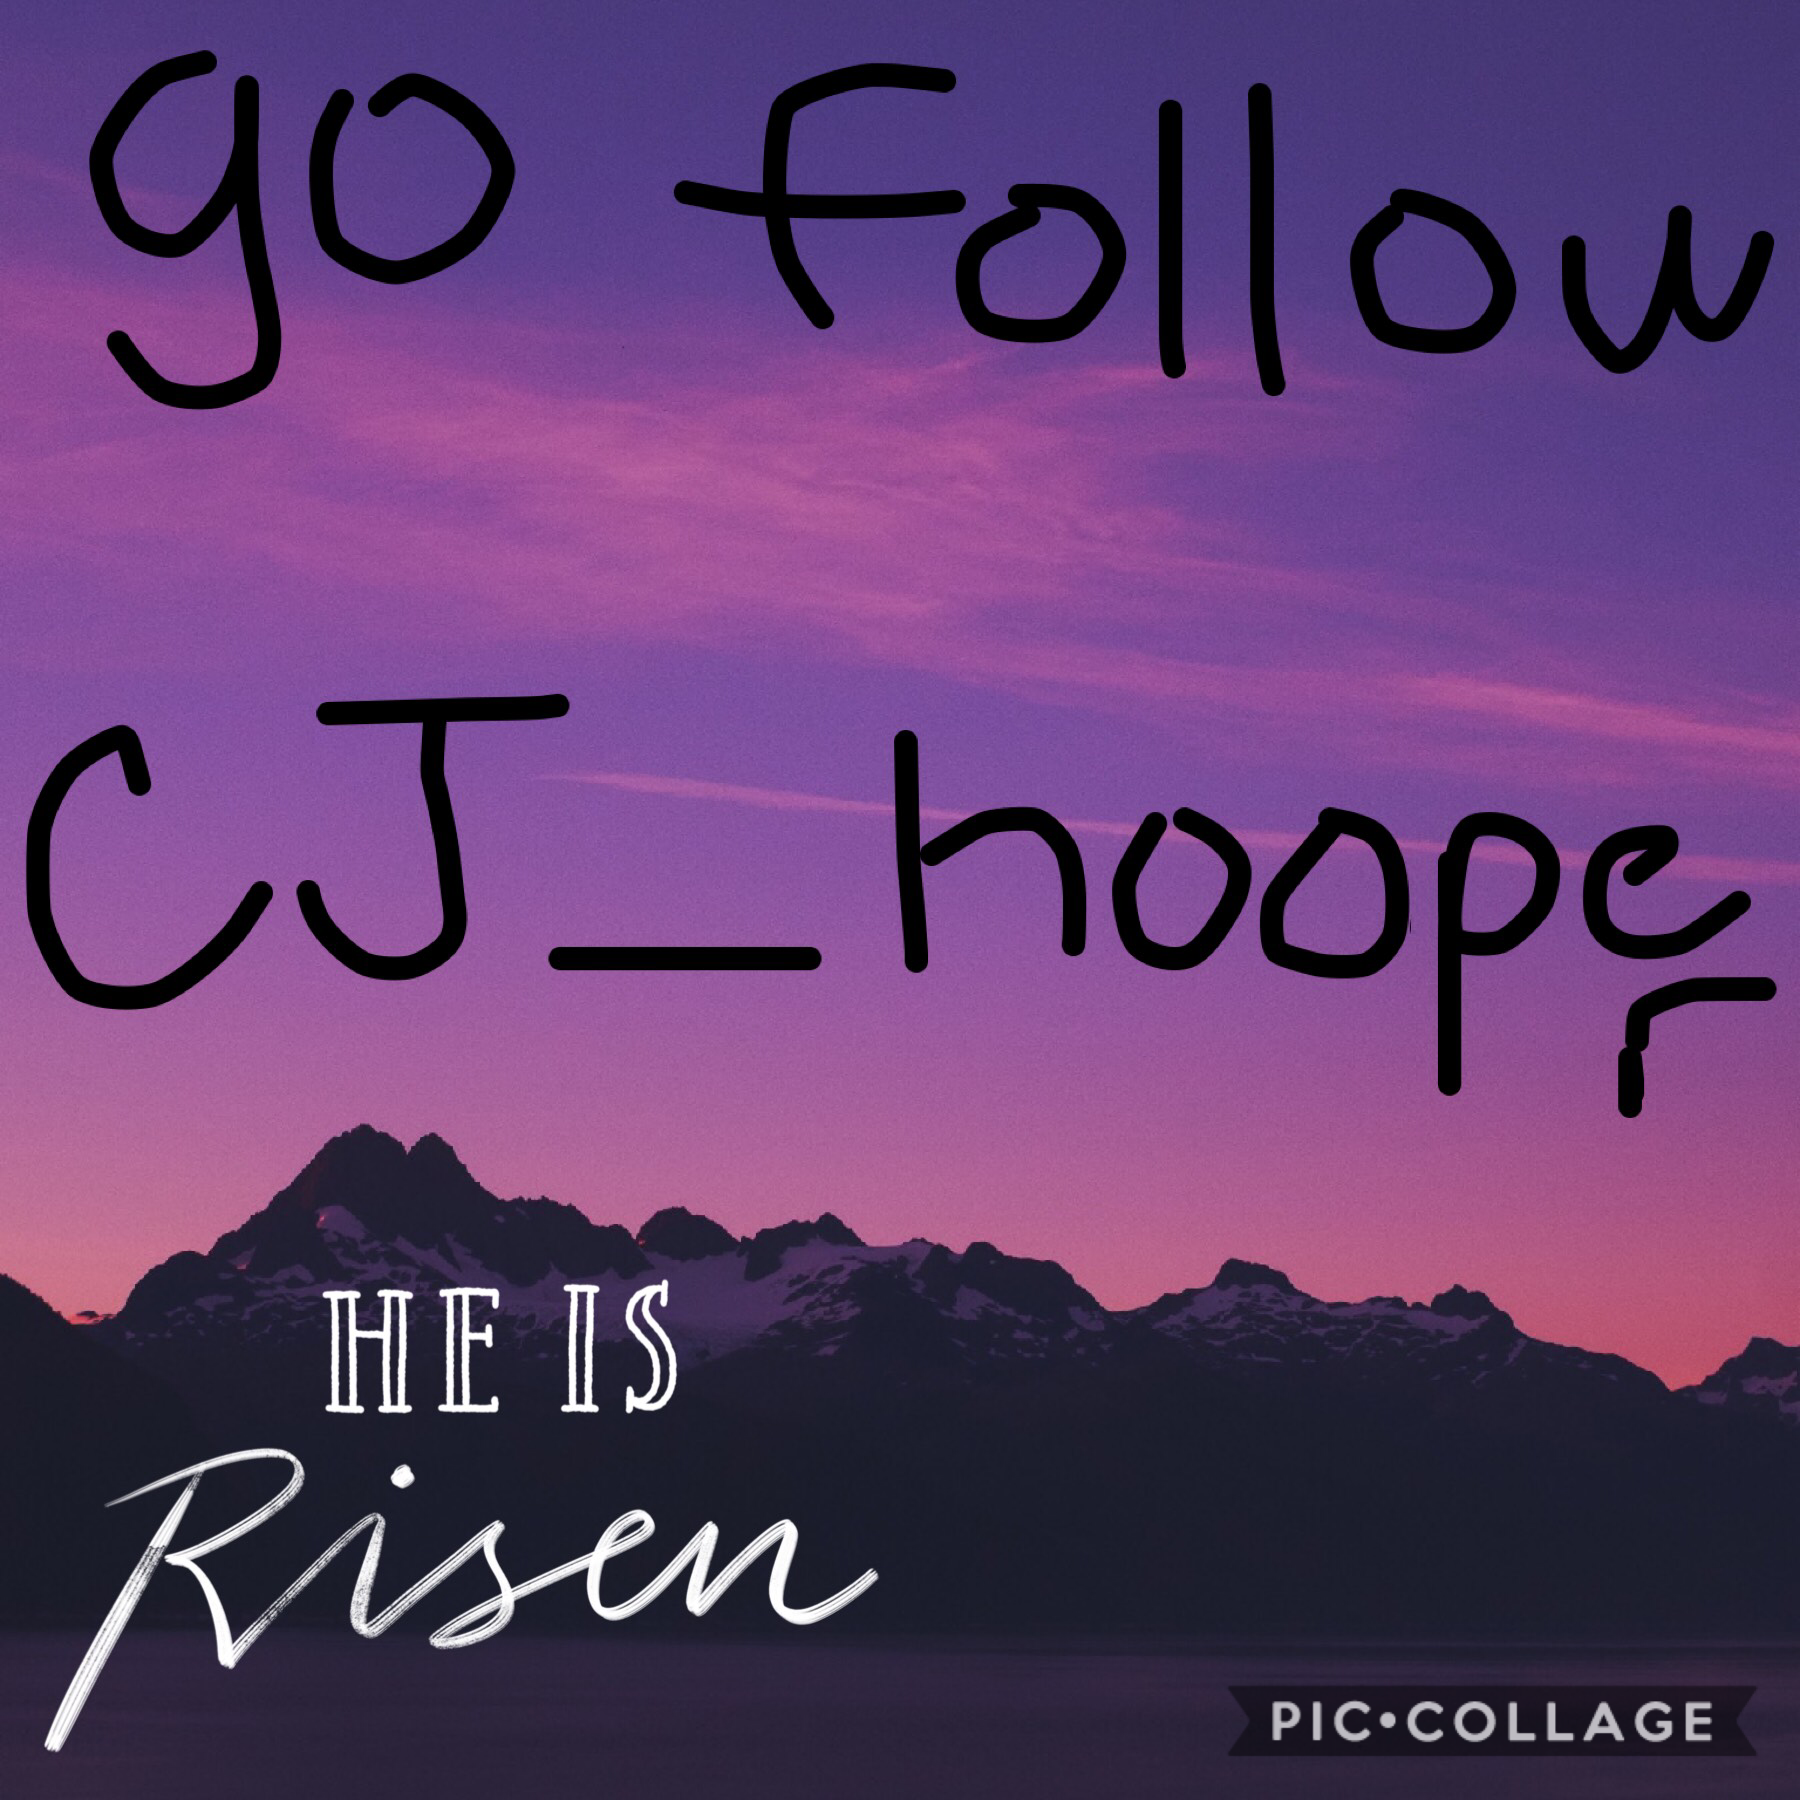 Go follow him,he’s a baller🏀⚽️